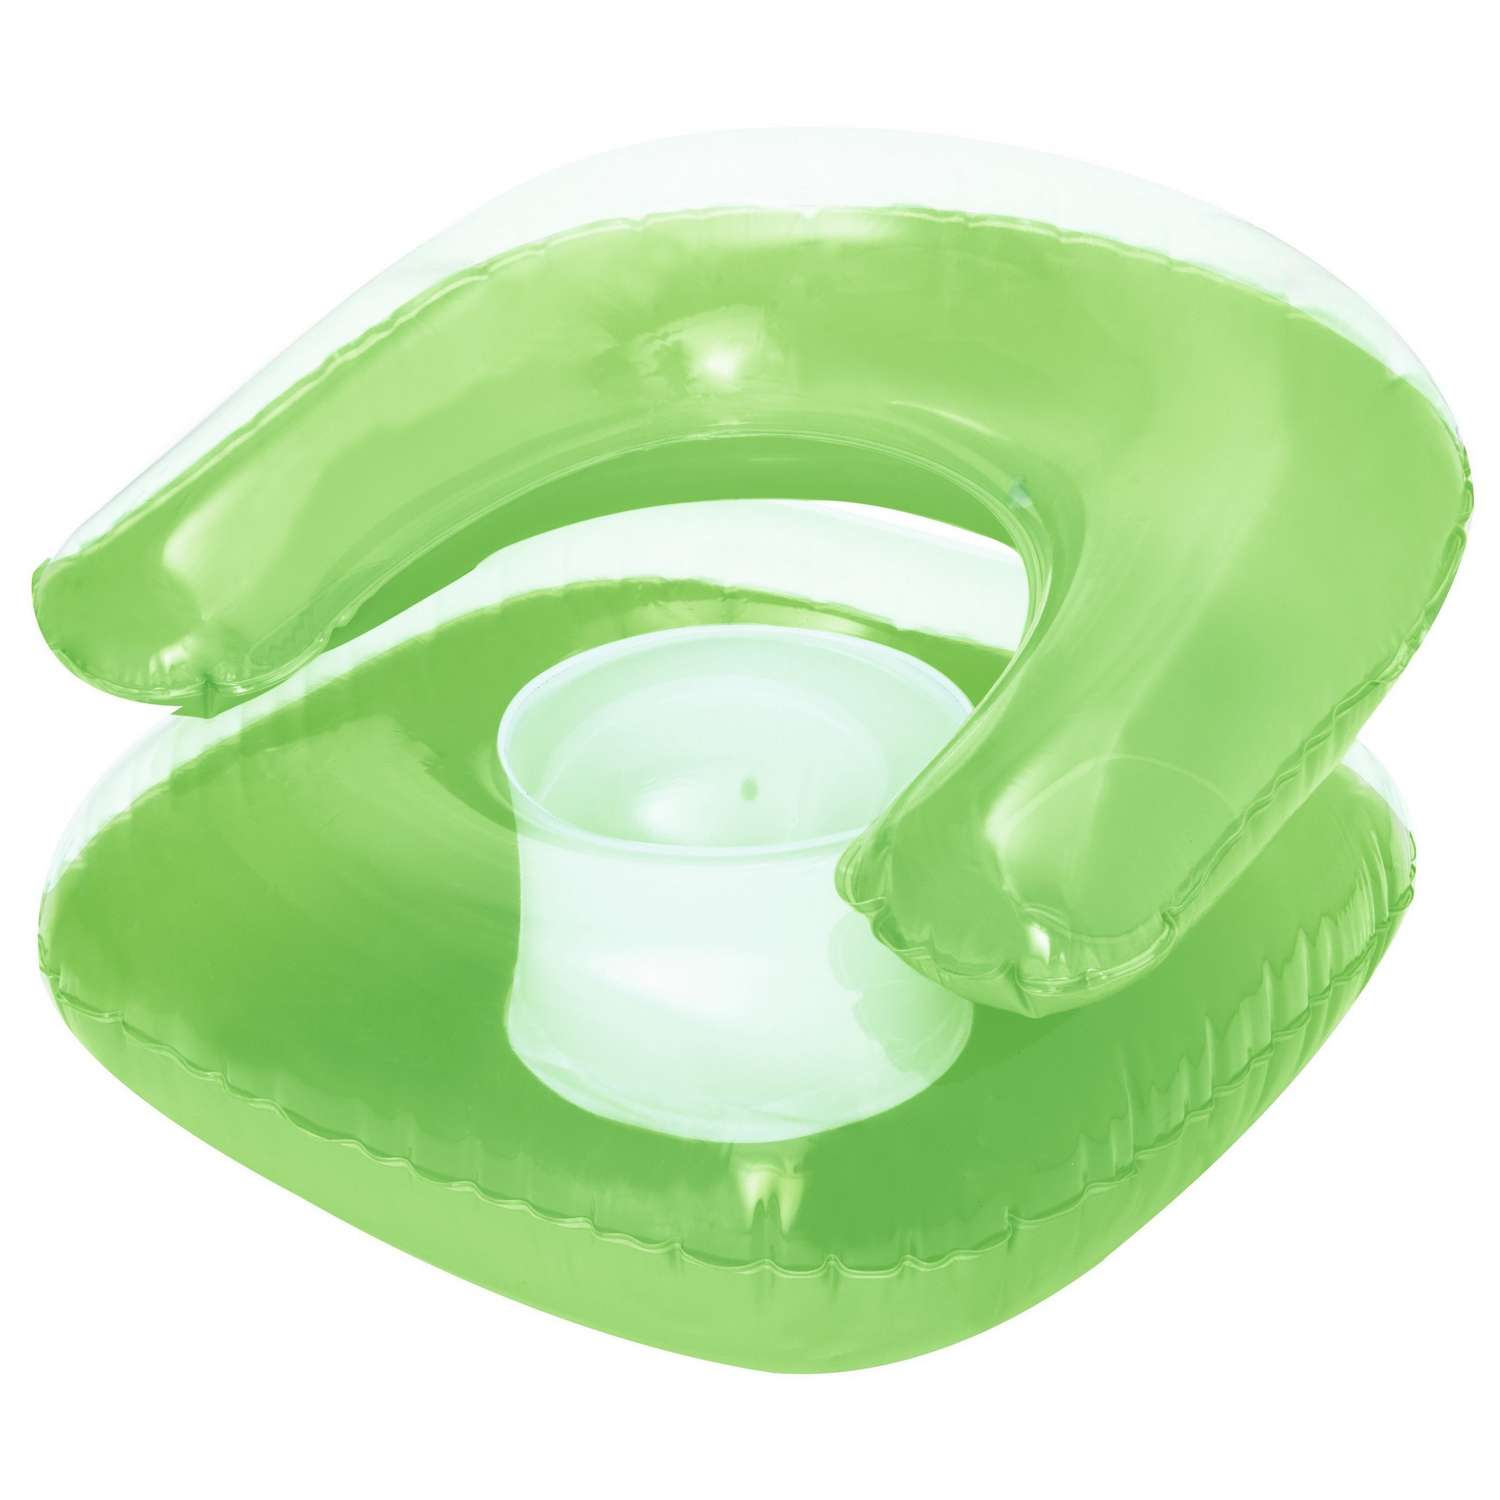 Кресло надувное Bestway Inflatables детское Зеленое - фото 1